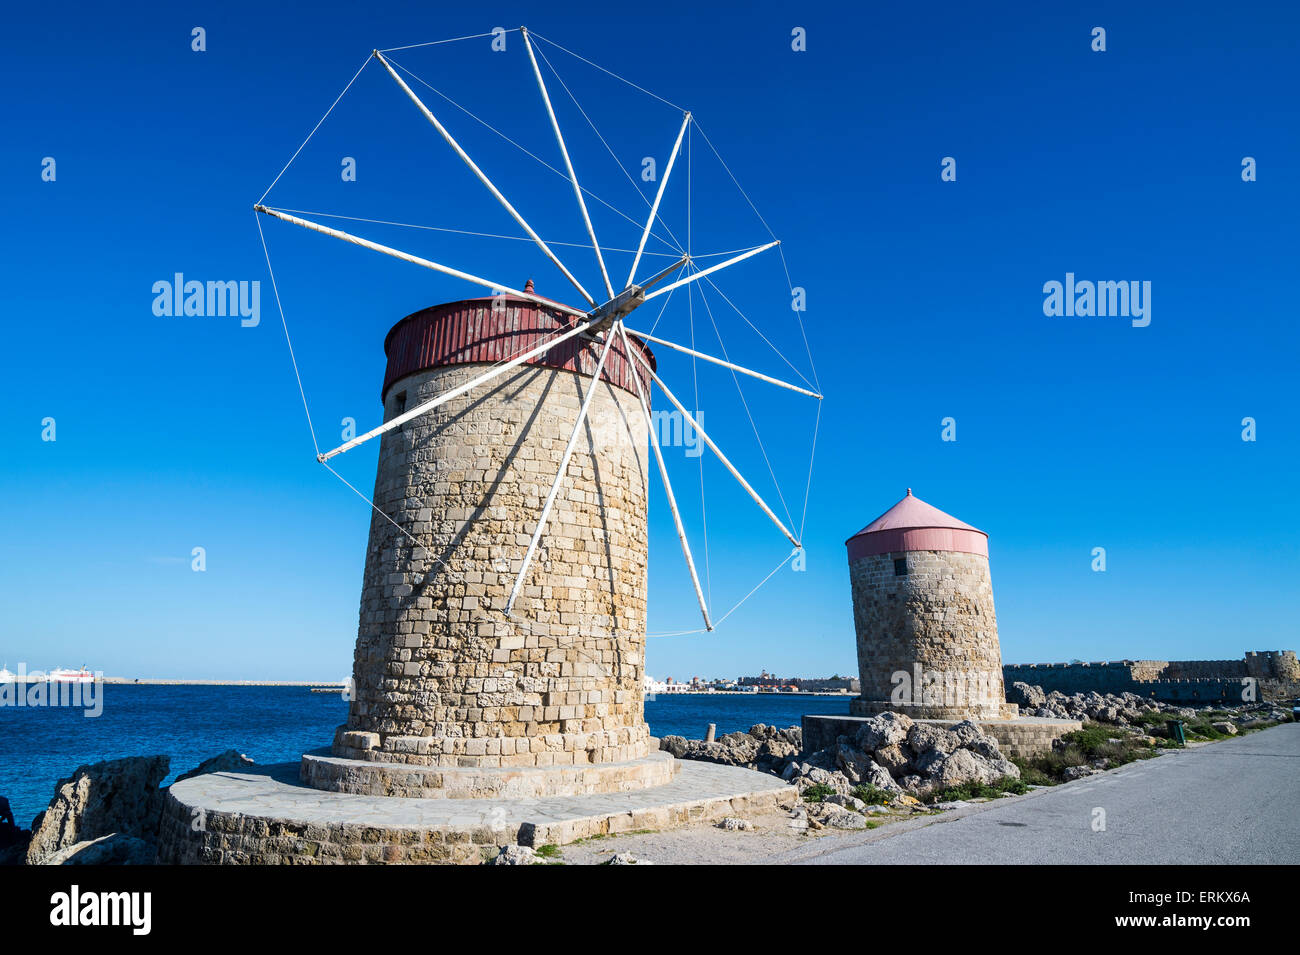 Mittelalterliche Windmühlen am Mandraki-Hafen, Altstadt von Rhodos, Rhodos, Dodekanes-Inseln, griechische Inseln, Griechenland, Europa Stockfoto